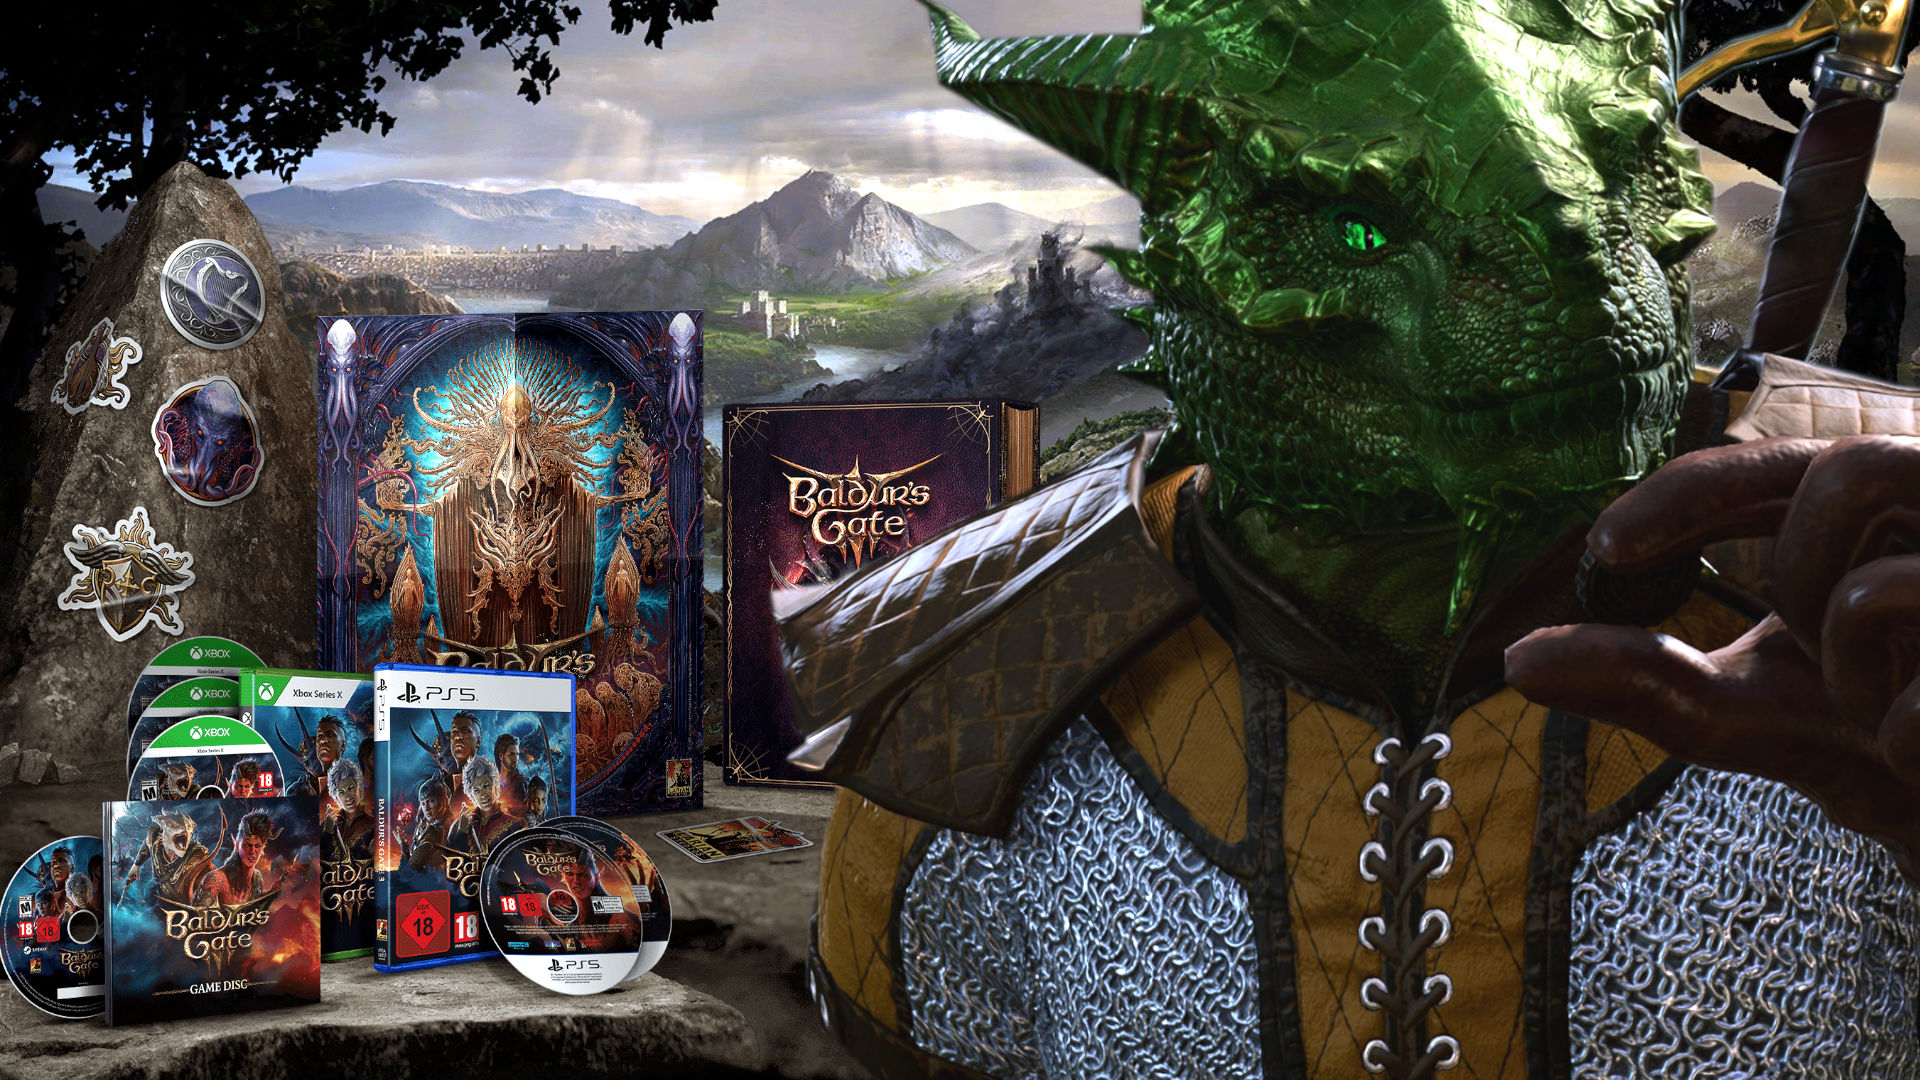 Im Hintergrund ist ein Screenshot von Baldur's Gate 3 und einige Inhalte der physischen Deluxe Edition des RPGs zu sehen. Im Vordergrund sehen wir einen Drachengeborenen, der vergrößert dargestellt ist und fragend schaut.